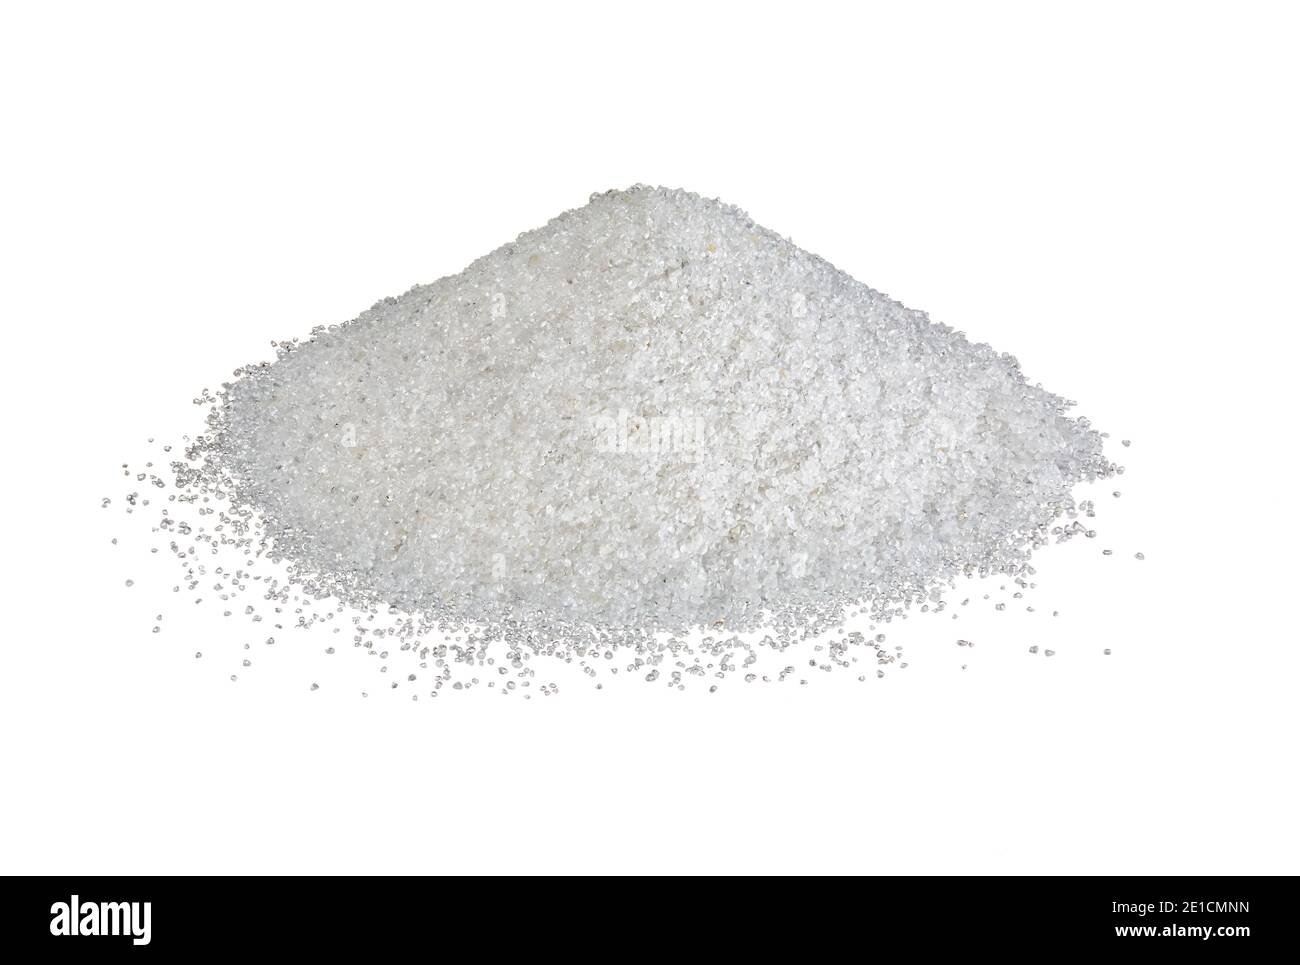 Monticule de sable blanc de Wanipigow photographié sur fond blanc. Banque D'Images